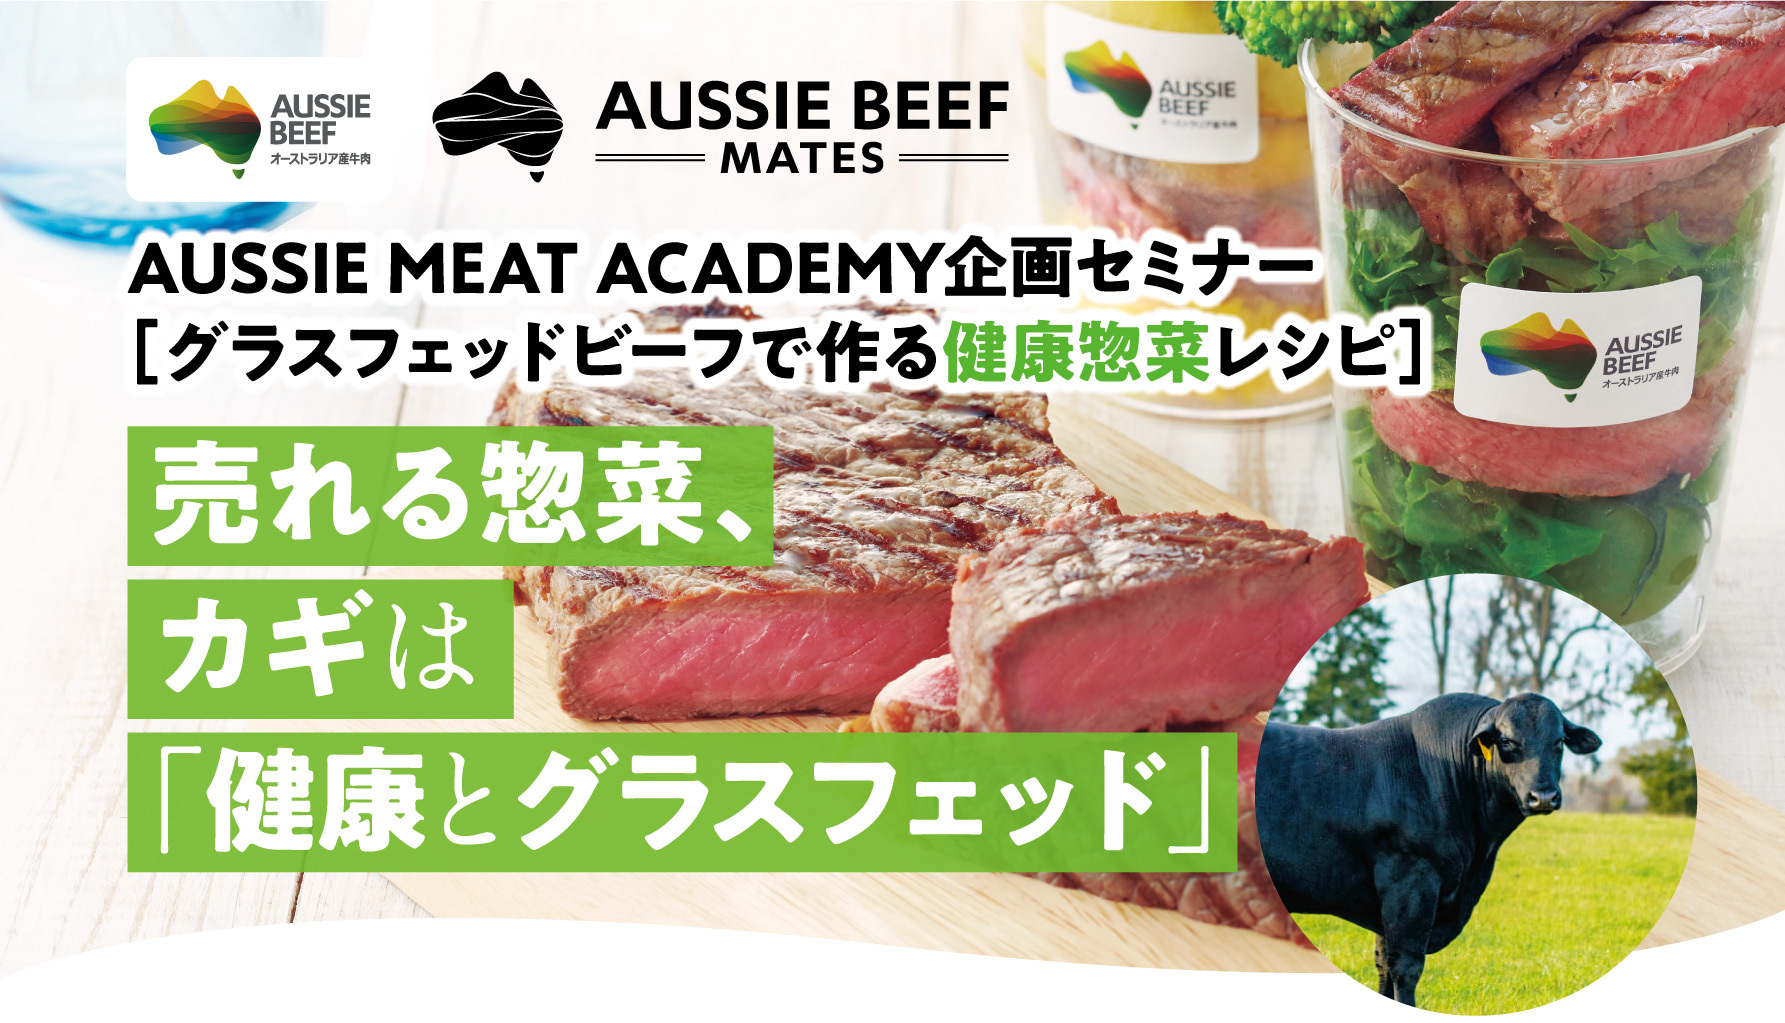 グラスフェッドビーフで作る健康惣菜セミナー　
食品業界従事者様限定で6月26日に大阪にて開催